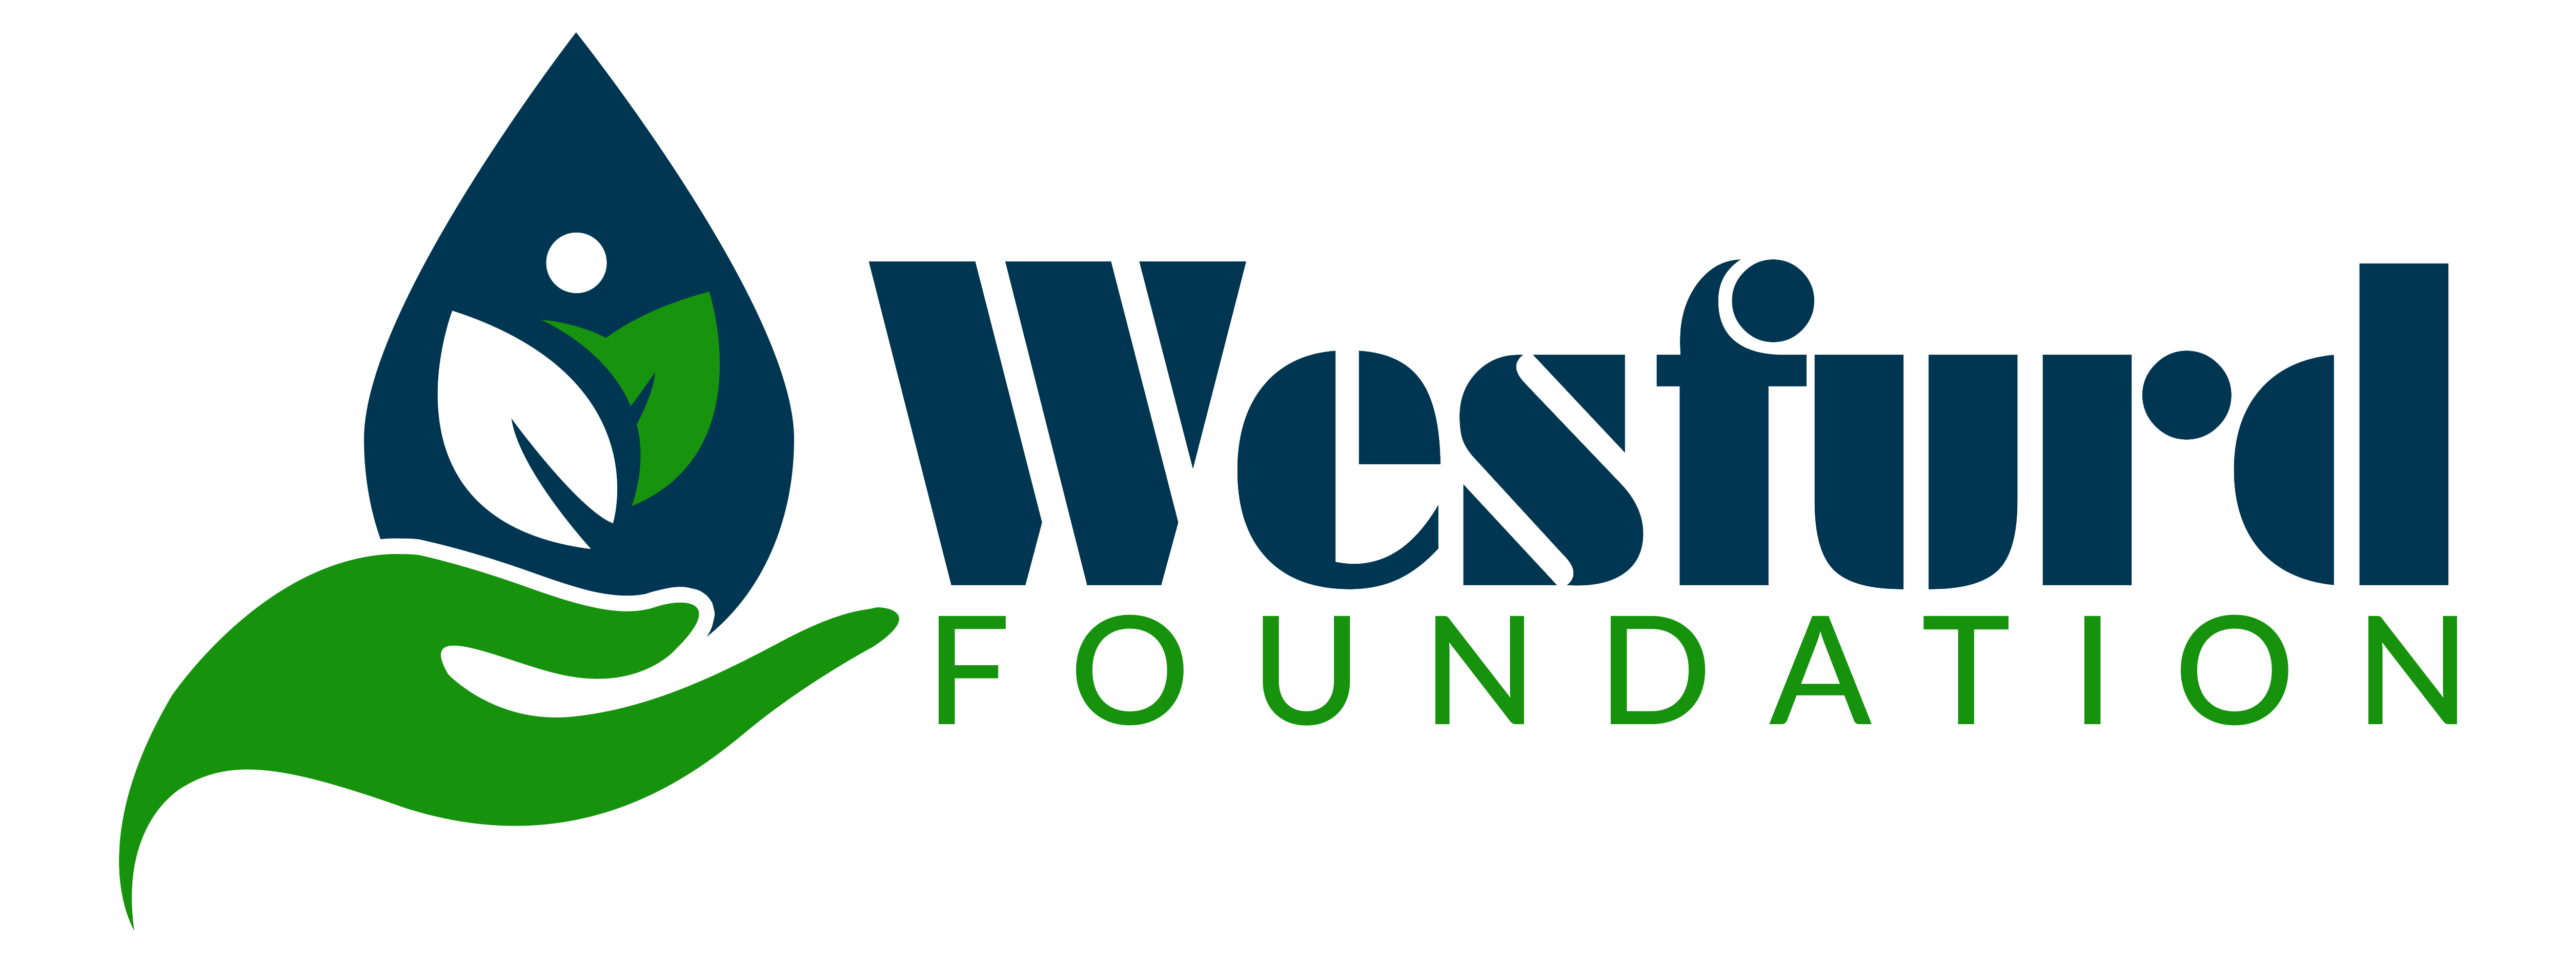 Wesfurd foundation